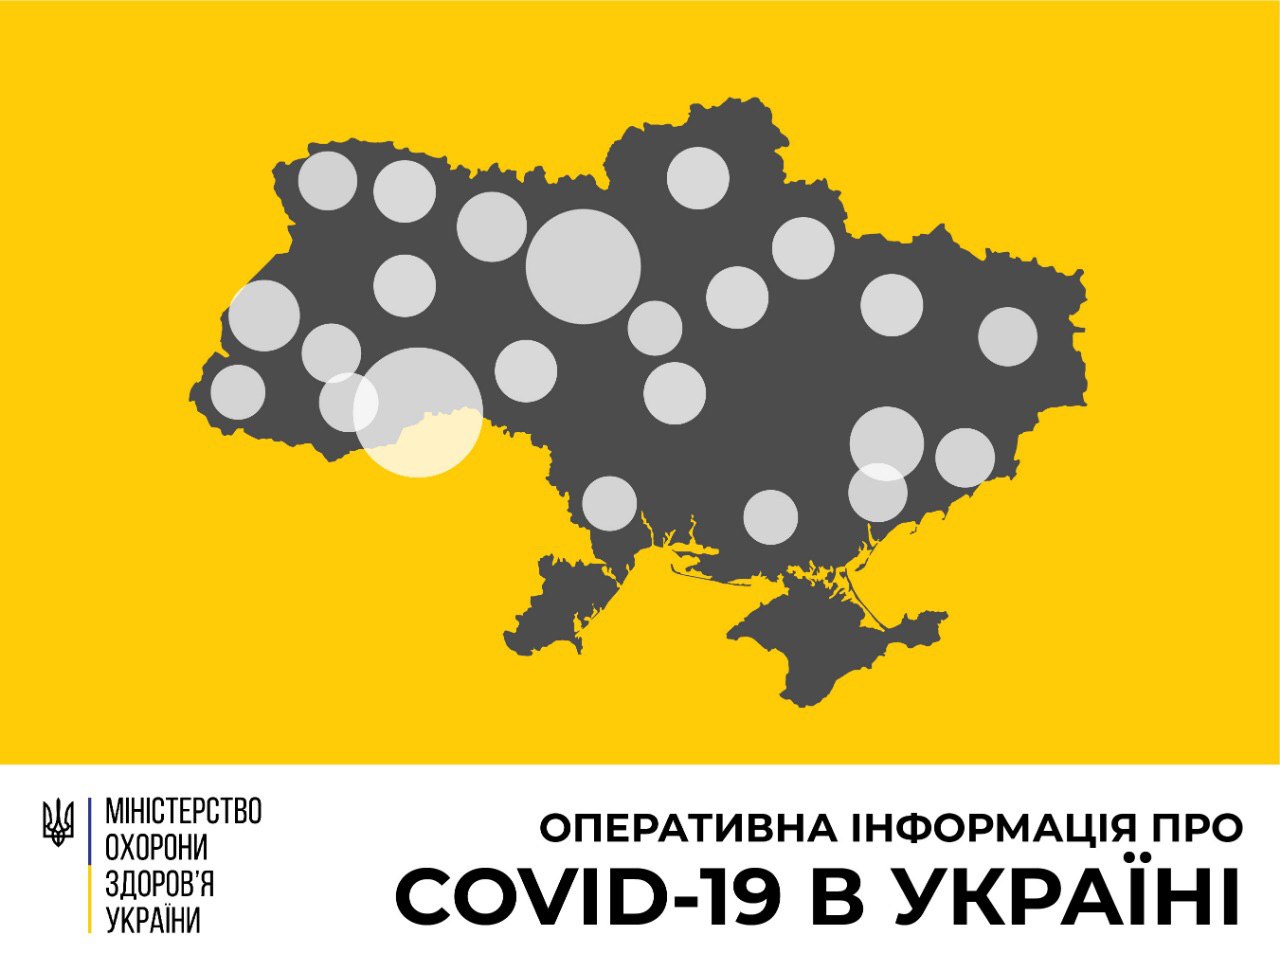 В Україні зафіксовано 794 випадки коронавірусної хвороби COVID-19 - МОЗ